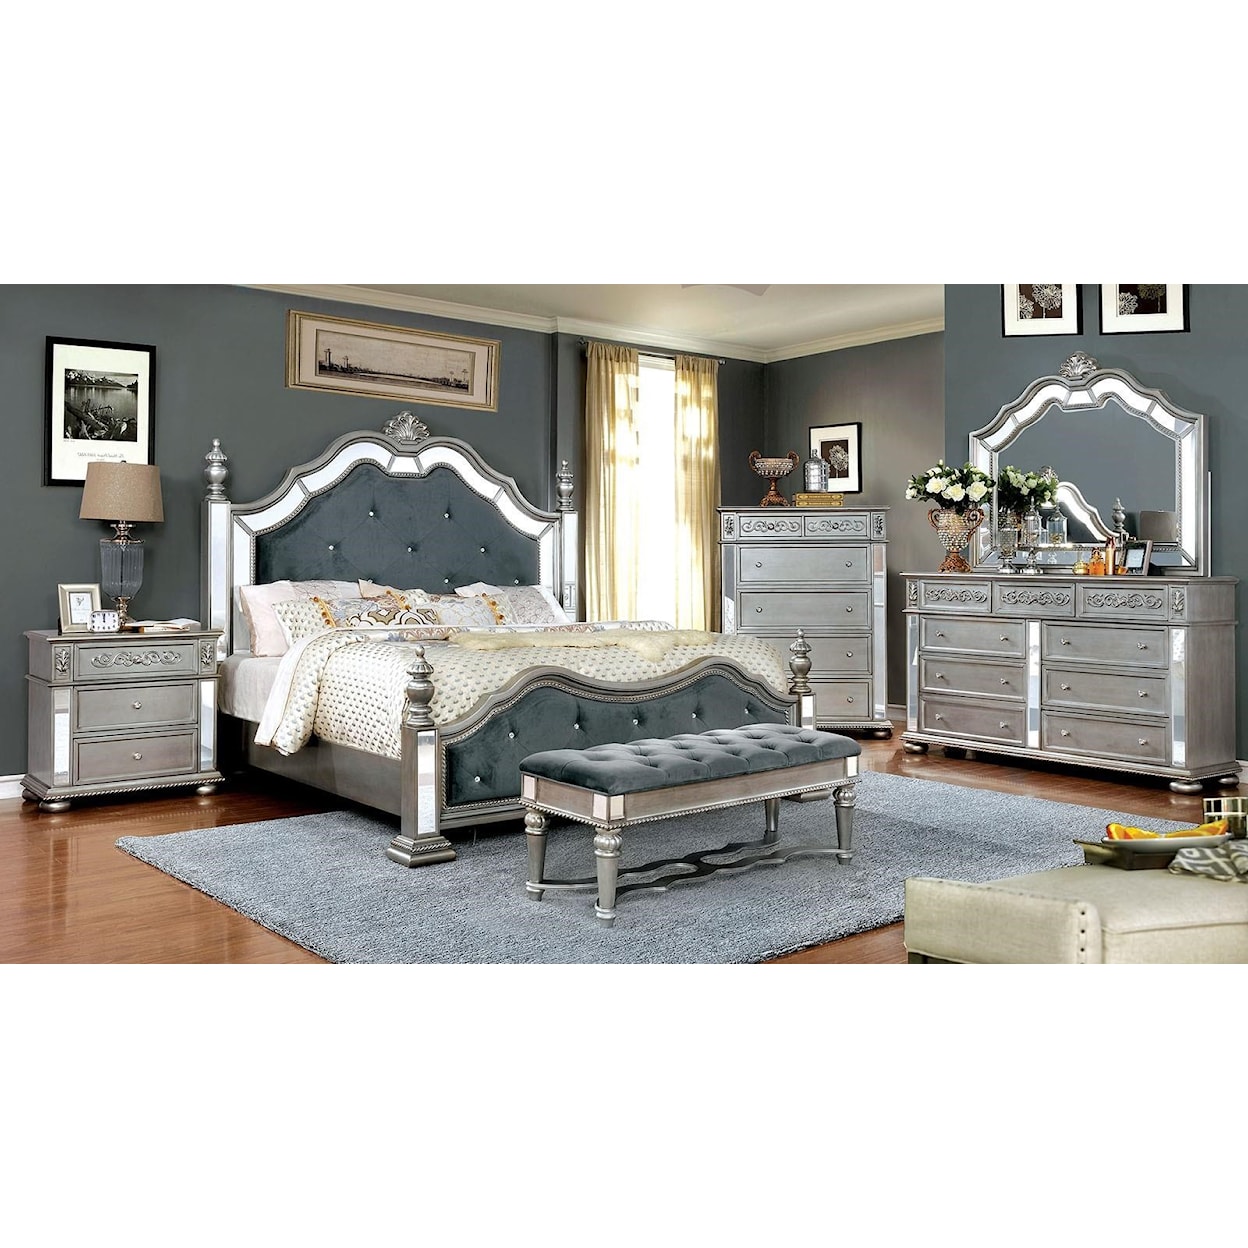 Furniture of America Azha Queen Bedroom Set